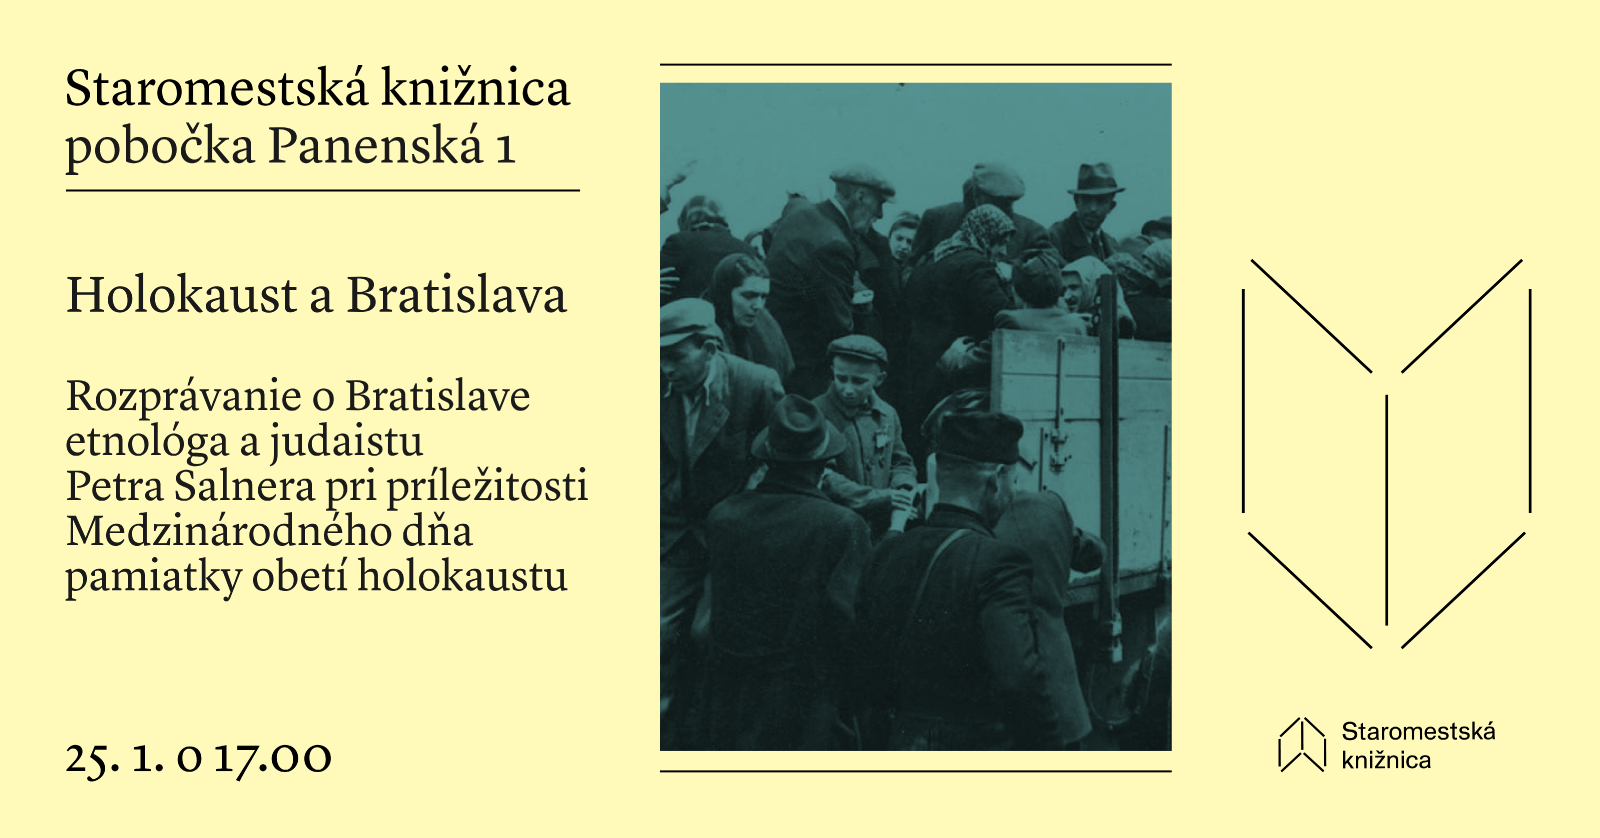 Holokaust a Bratislava - 25. 1. o 17.00 na Panenskej 1